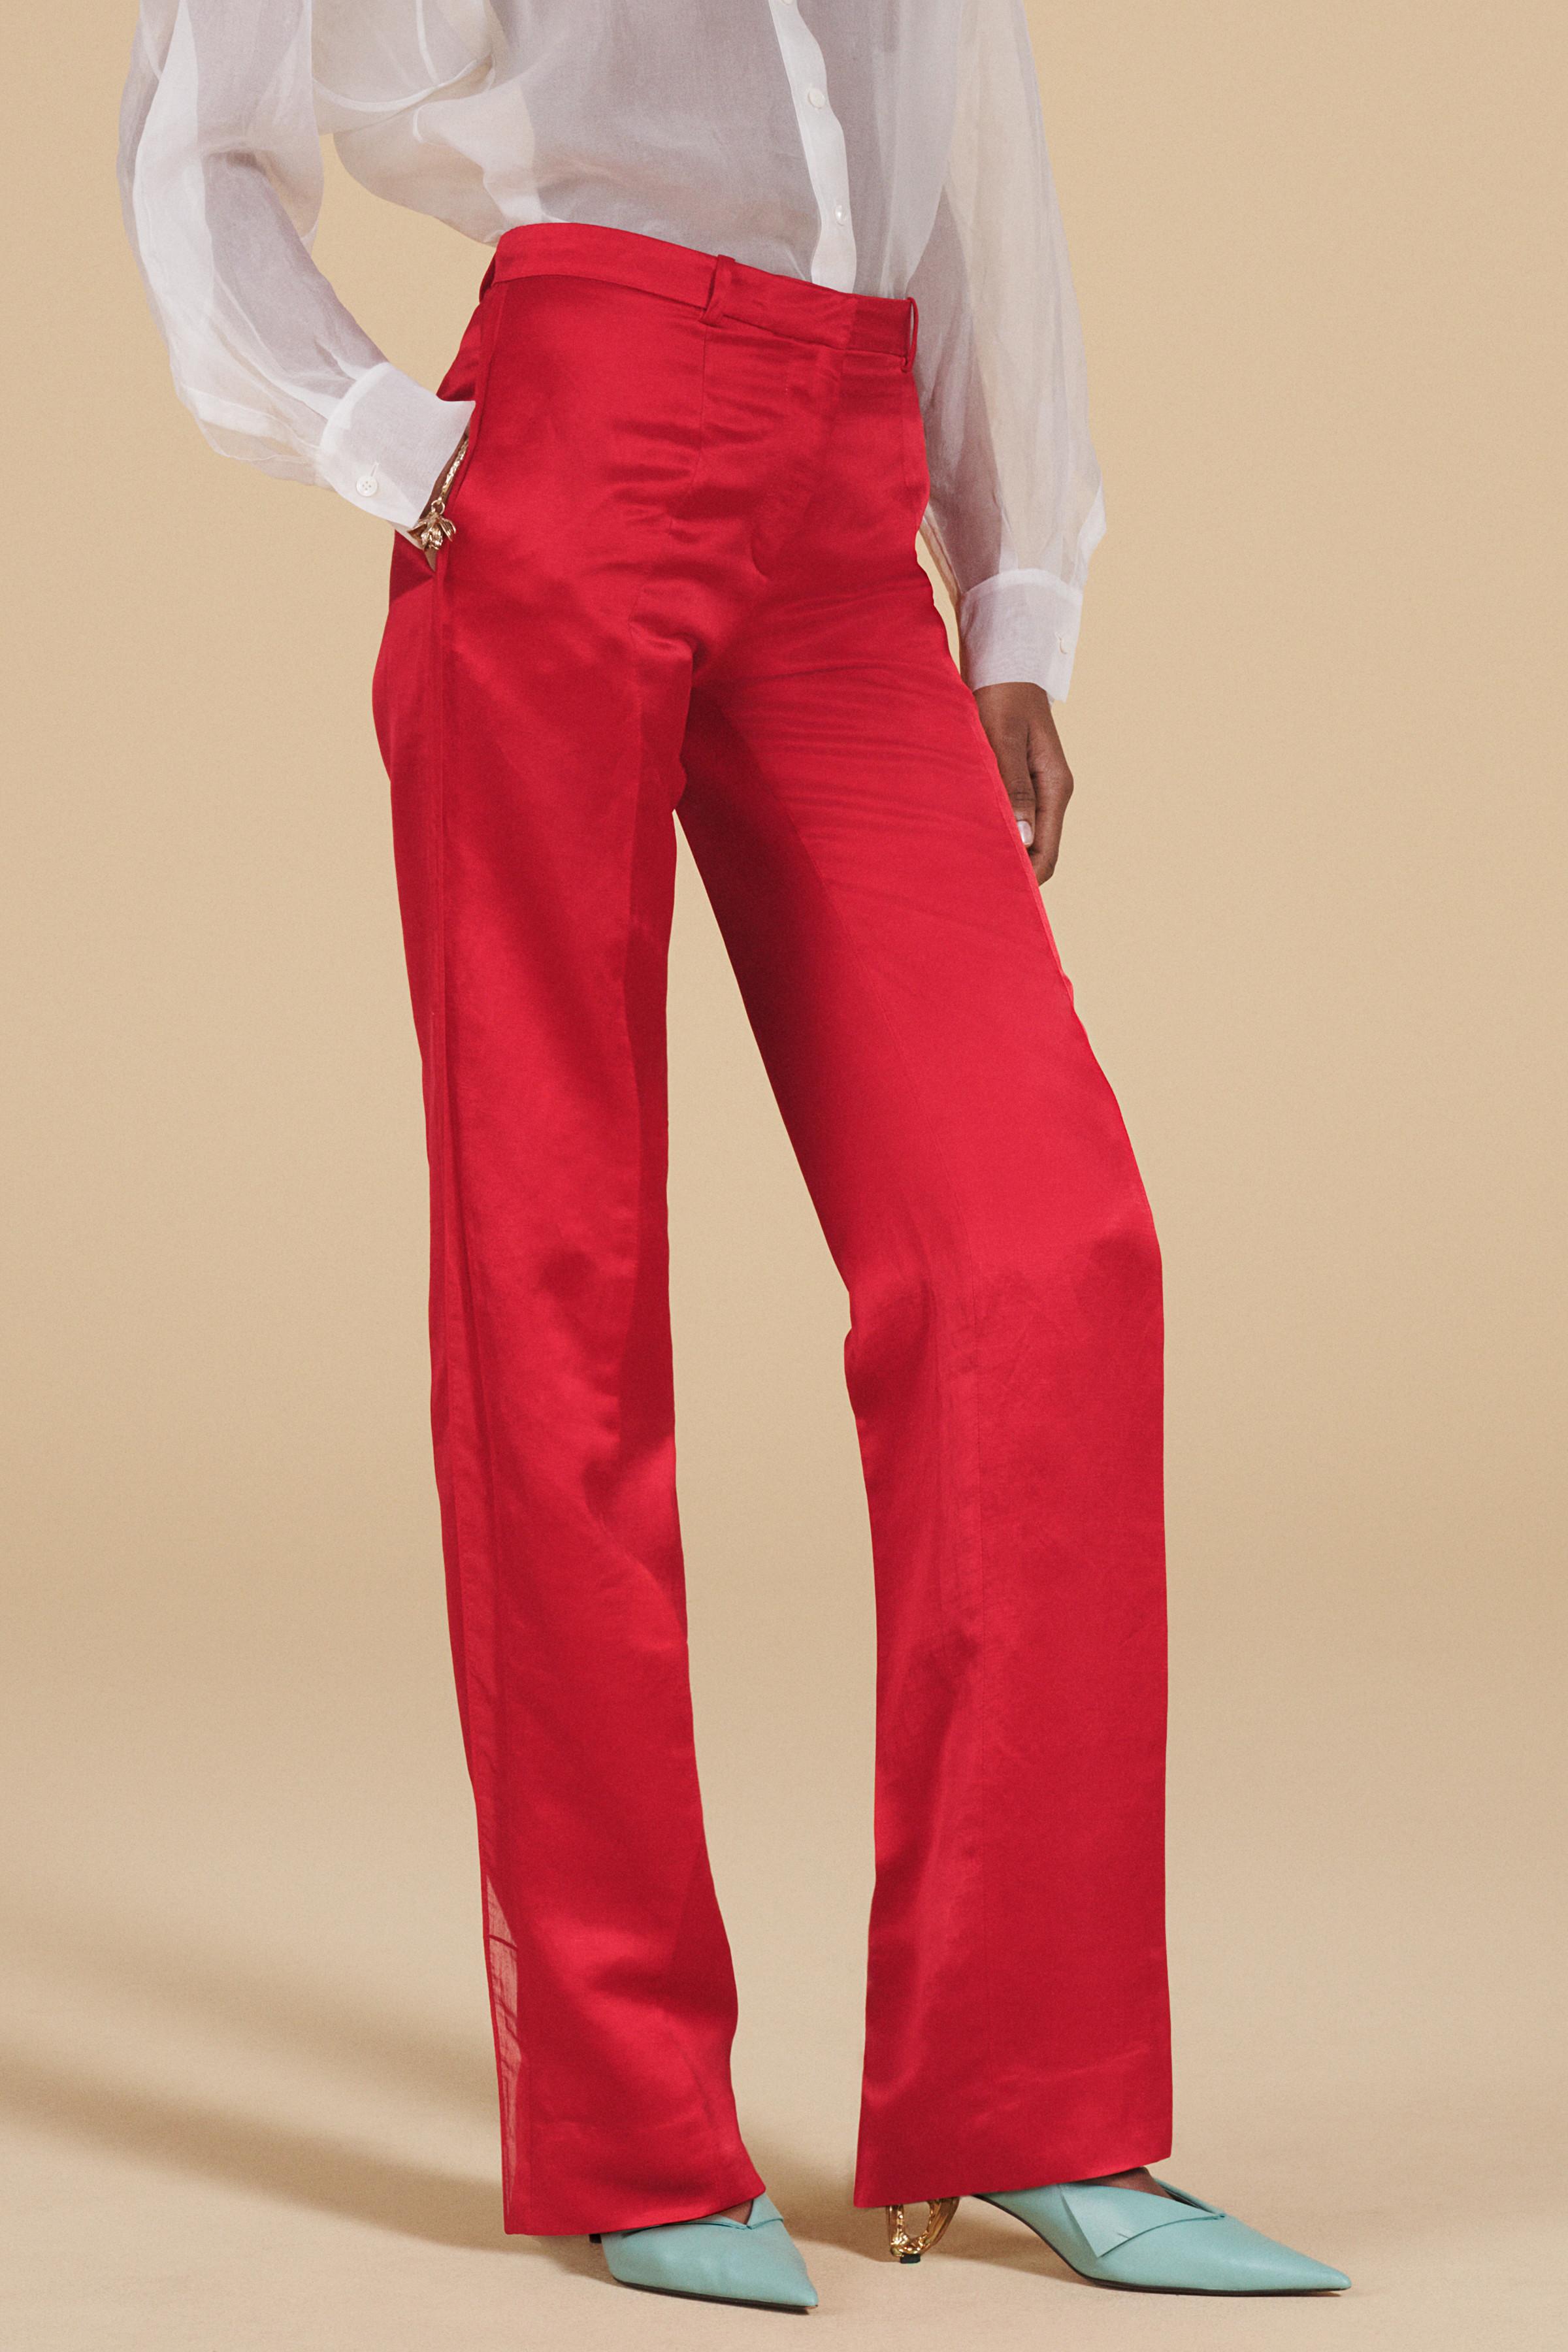 100% Premium Linen Set Linen Bralette With Pants Bralette for Women Long  Linen Pants Linen Clothing Gift for Her LAA160 -  Canada